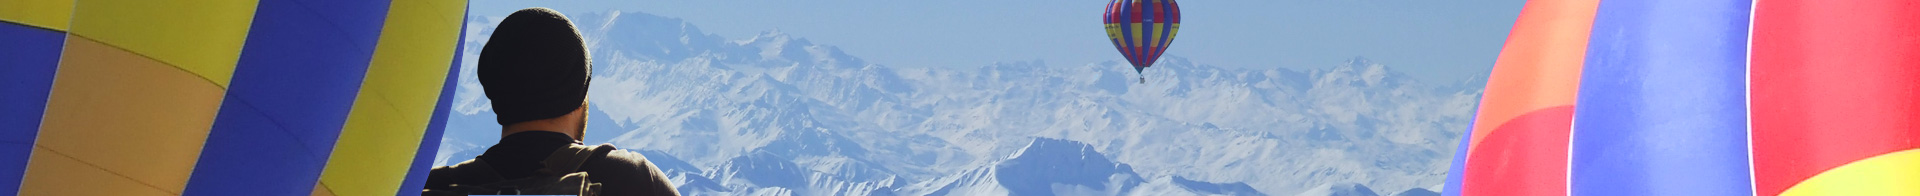 Alpes Montgolfiere - Mont Blanc